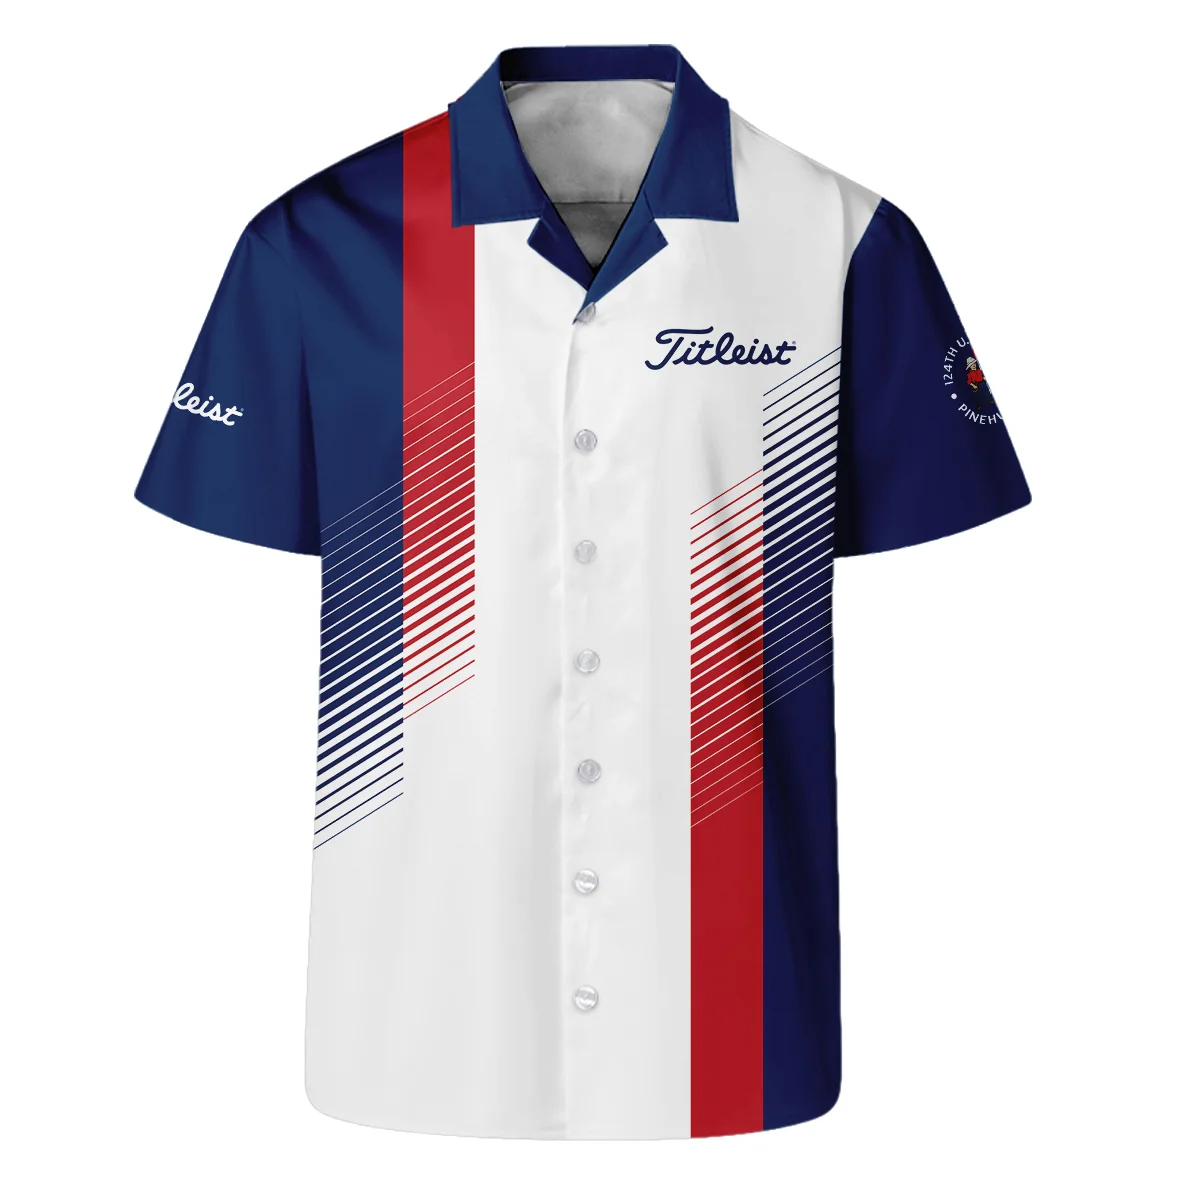 Sport Titleist 124th U.S. Open Pinehurst Golf Hawaiian Shirt Blue Red Striped Pattern White All Over Print Oversized Hawaiian Shirt